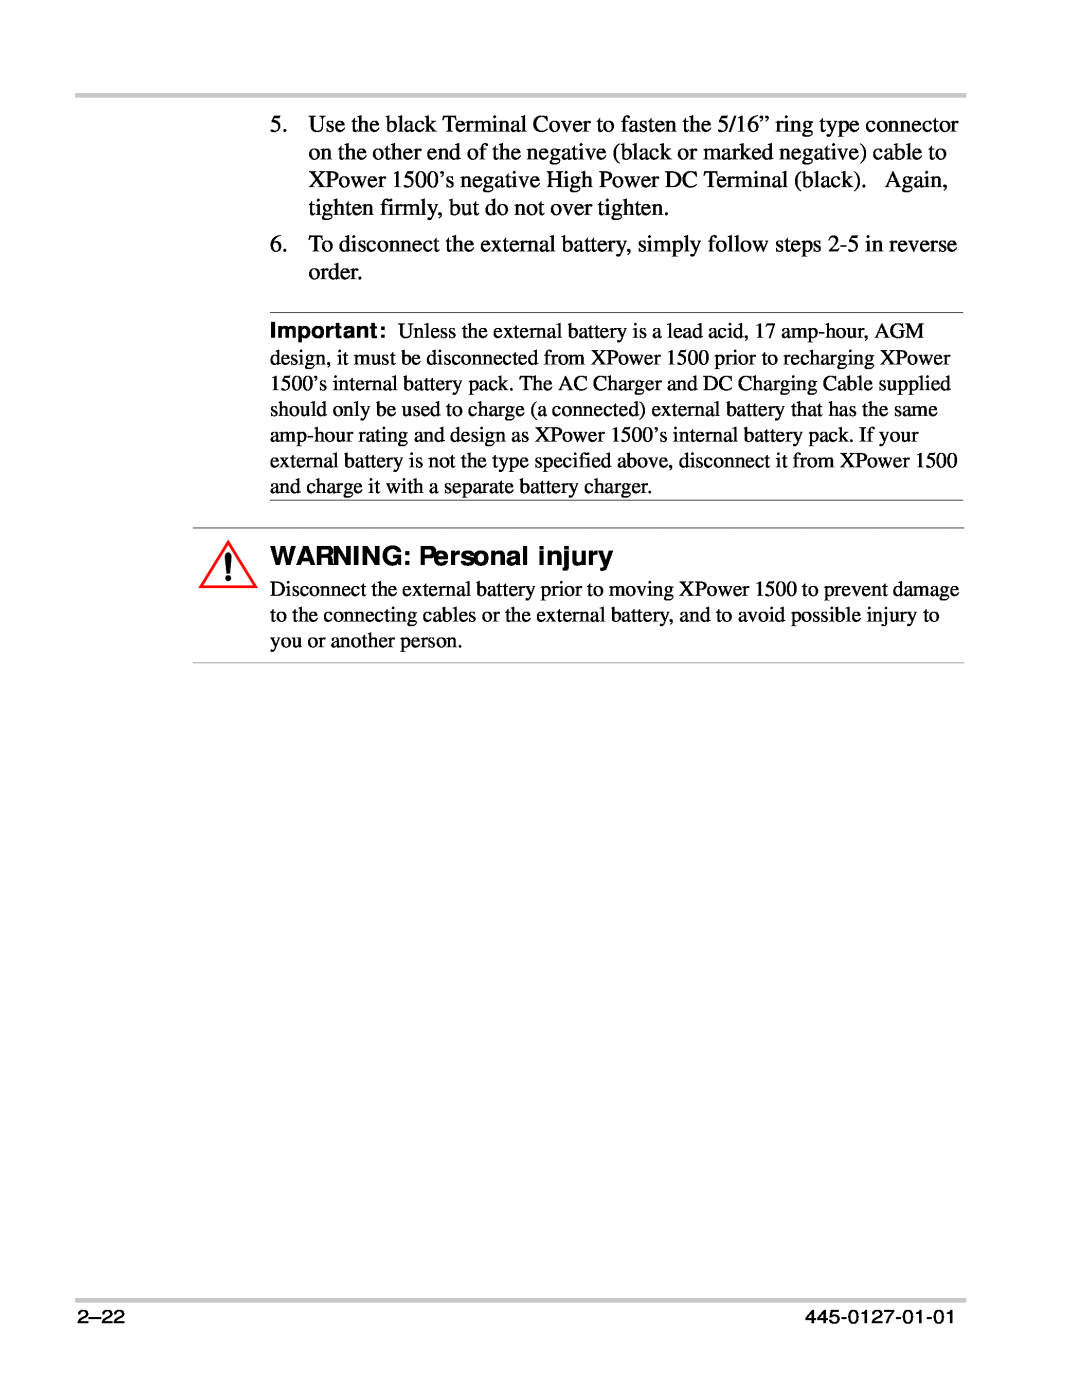 Xantrex Technology 1500 manual WARNING Personal injury, 2-22, 445-0127-01-01 